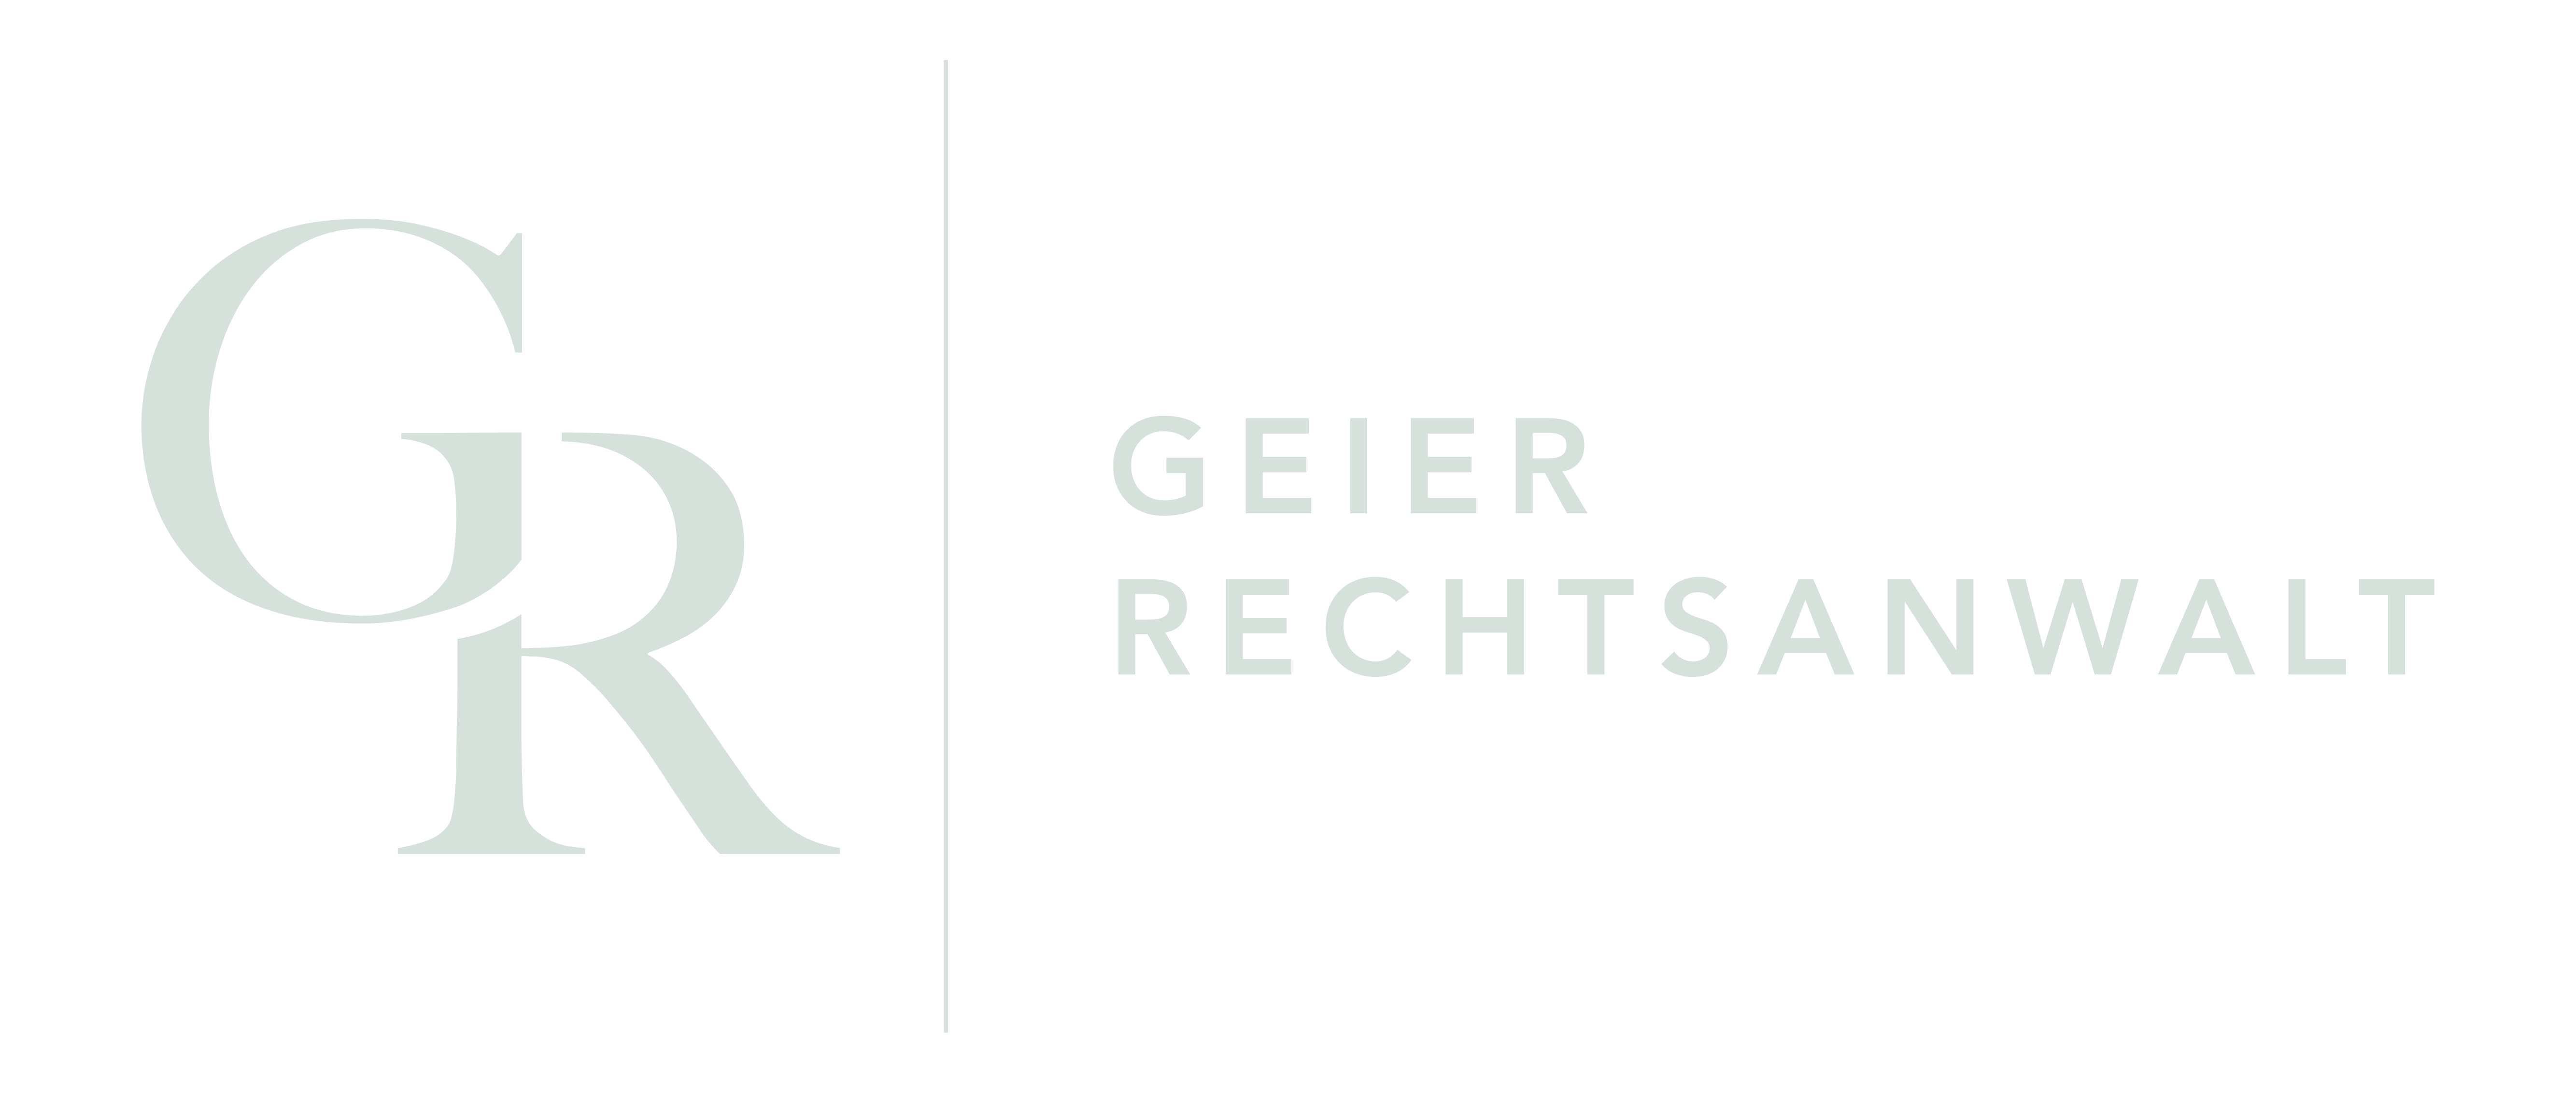 Geier Rechtsanwalt Logo